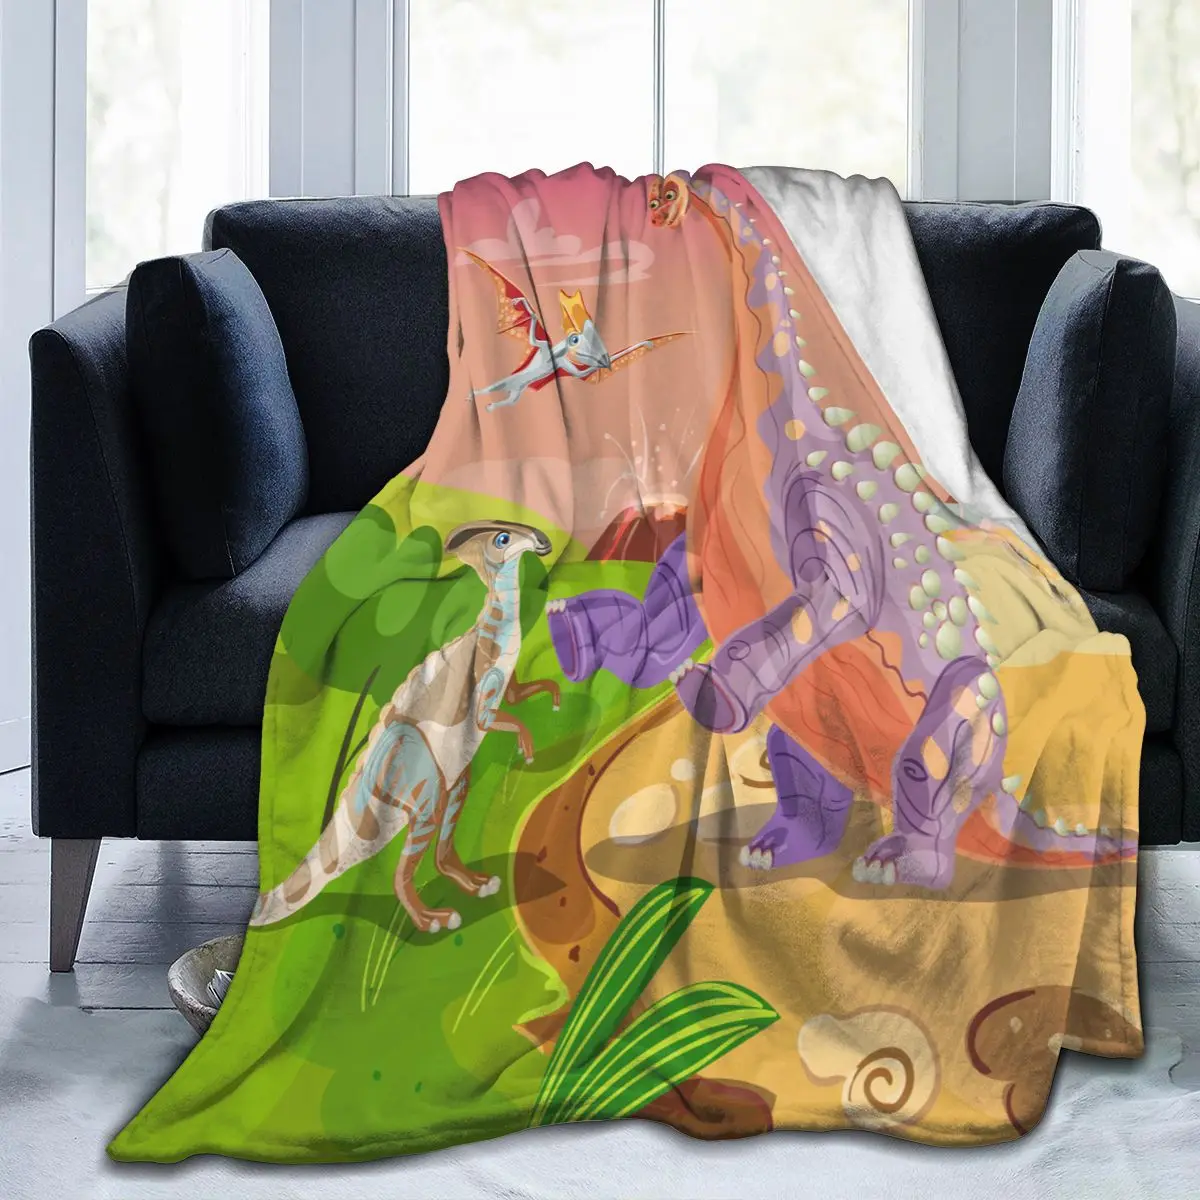 

Фланелевое Одеяло с милым динозавром, ультра-мягкое Флисовое одеяло из микрофлиса, одеяло для халата, дивана, кровати, путешествий, дома, зим...